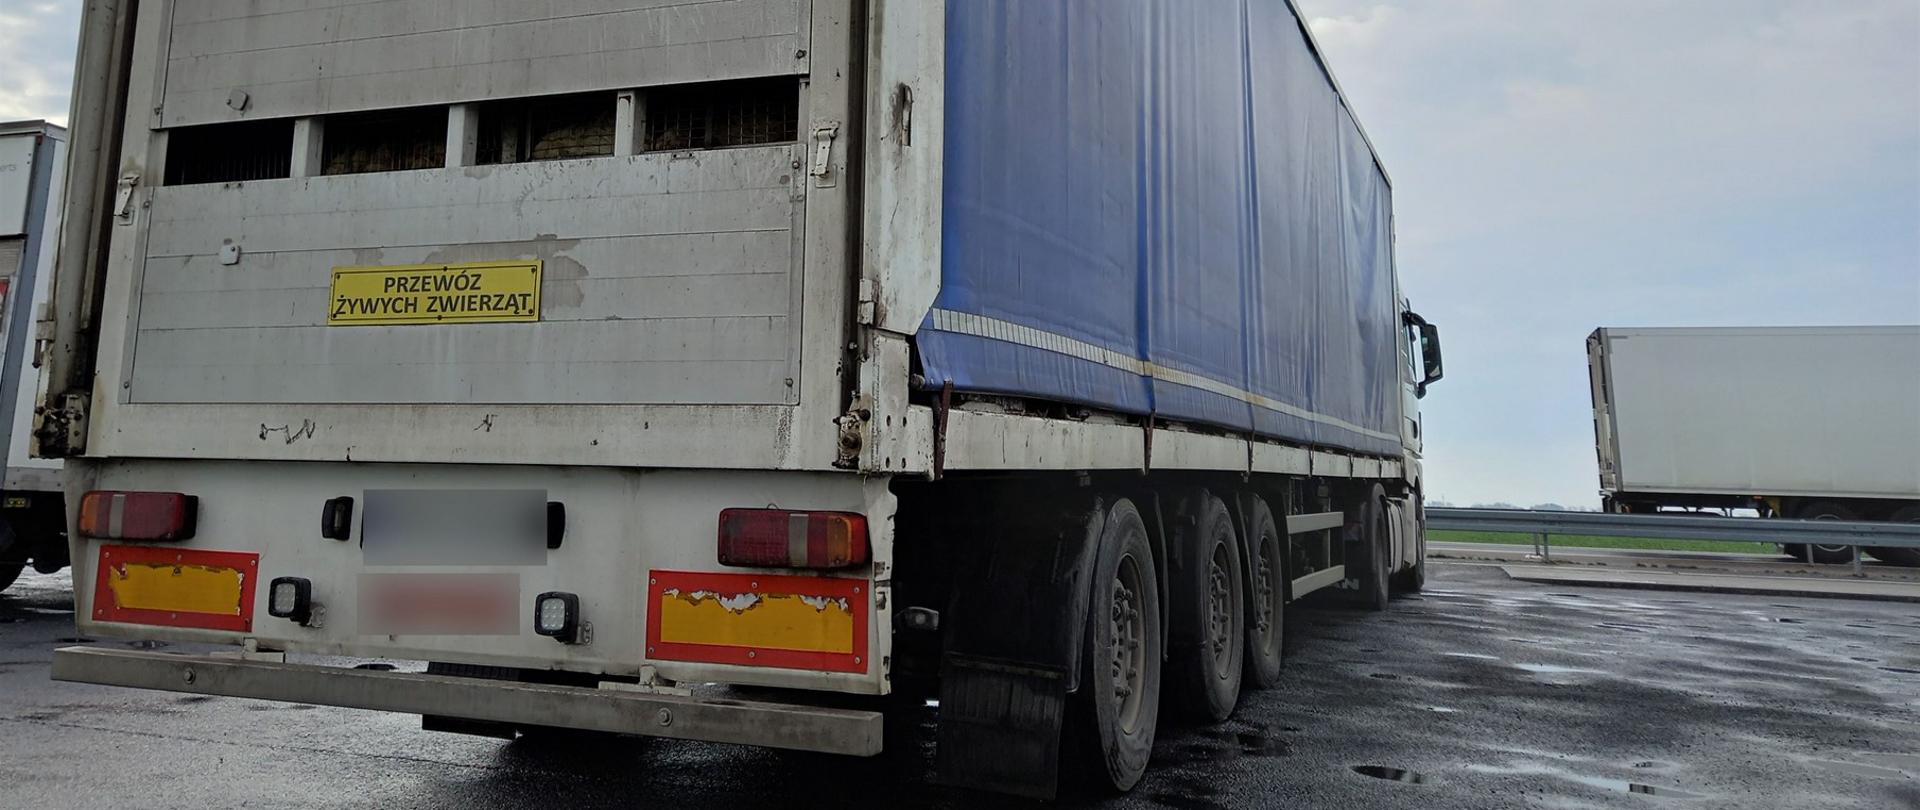 Wielkopolscy inspektorzy z Leszna zatrzymali dynamicznie do kontroli zespół pojazdów, który z ładunkiem drobiu ważył 41,85 t